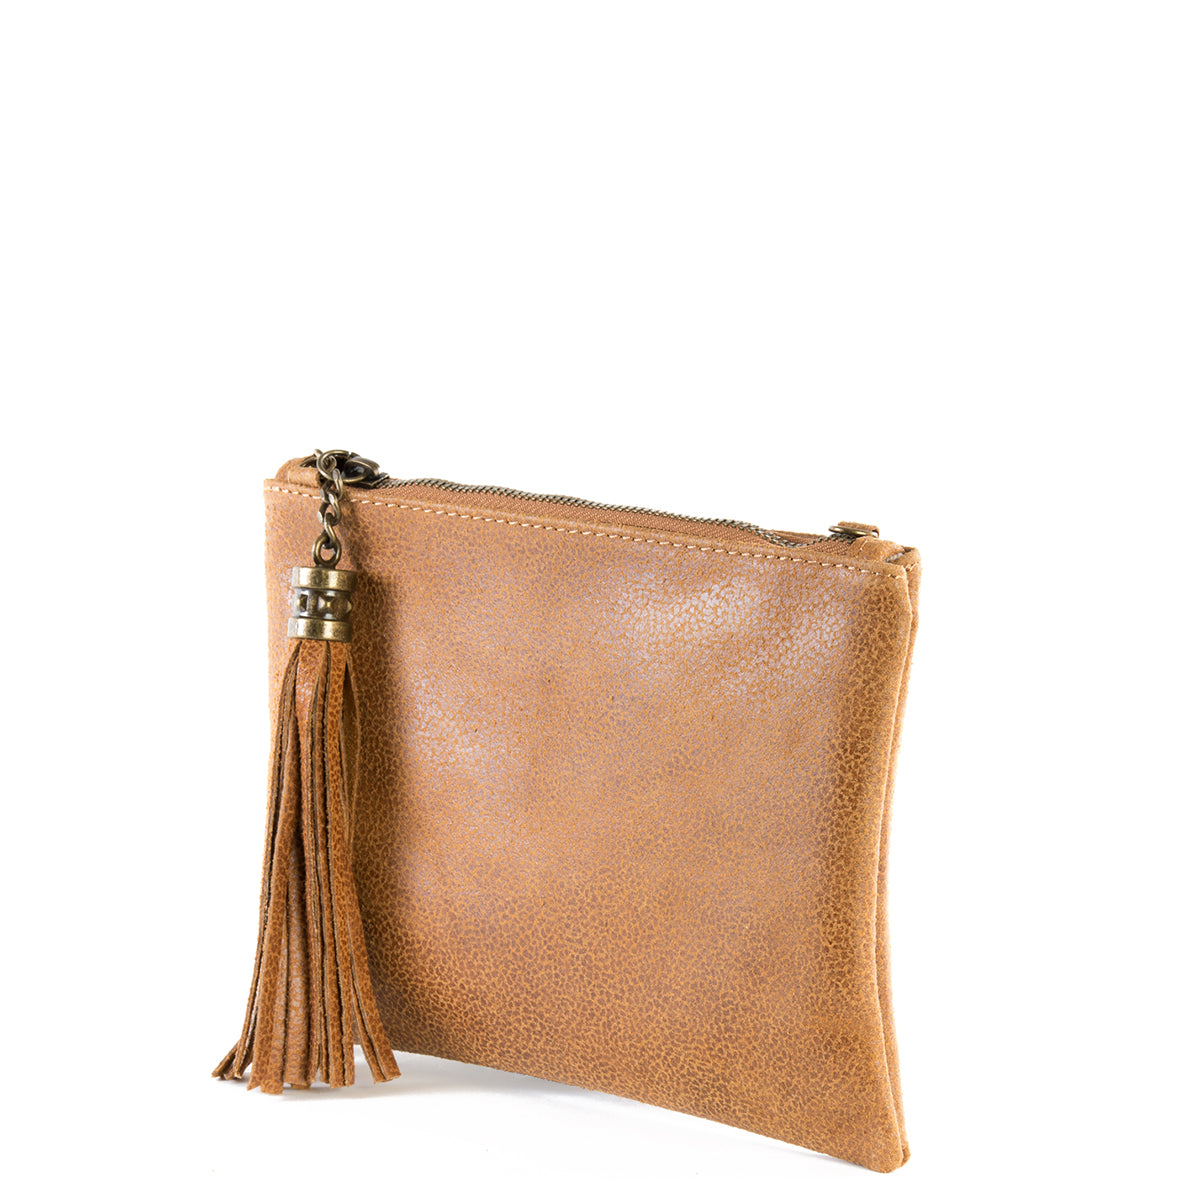 Tan Real Leather Tassel Clutch Bag - Amilu